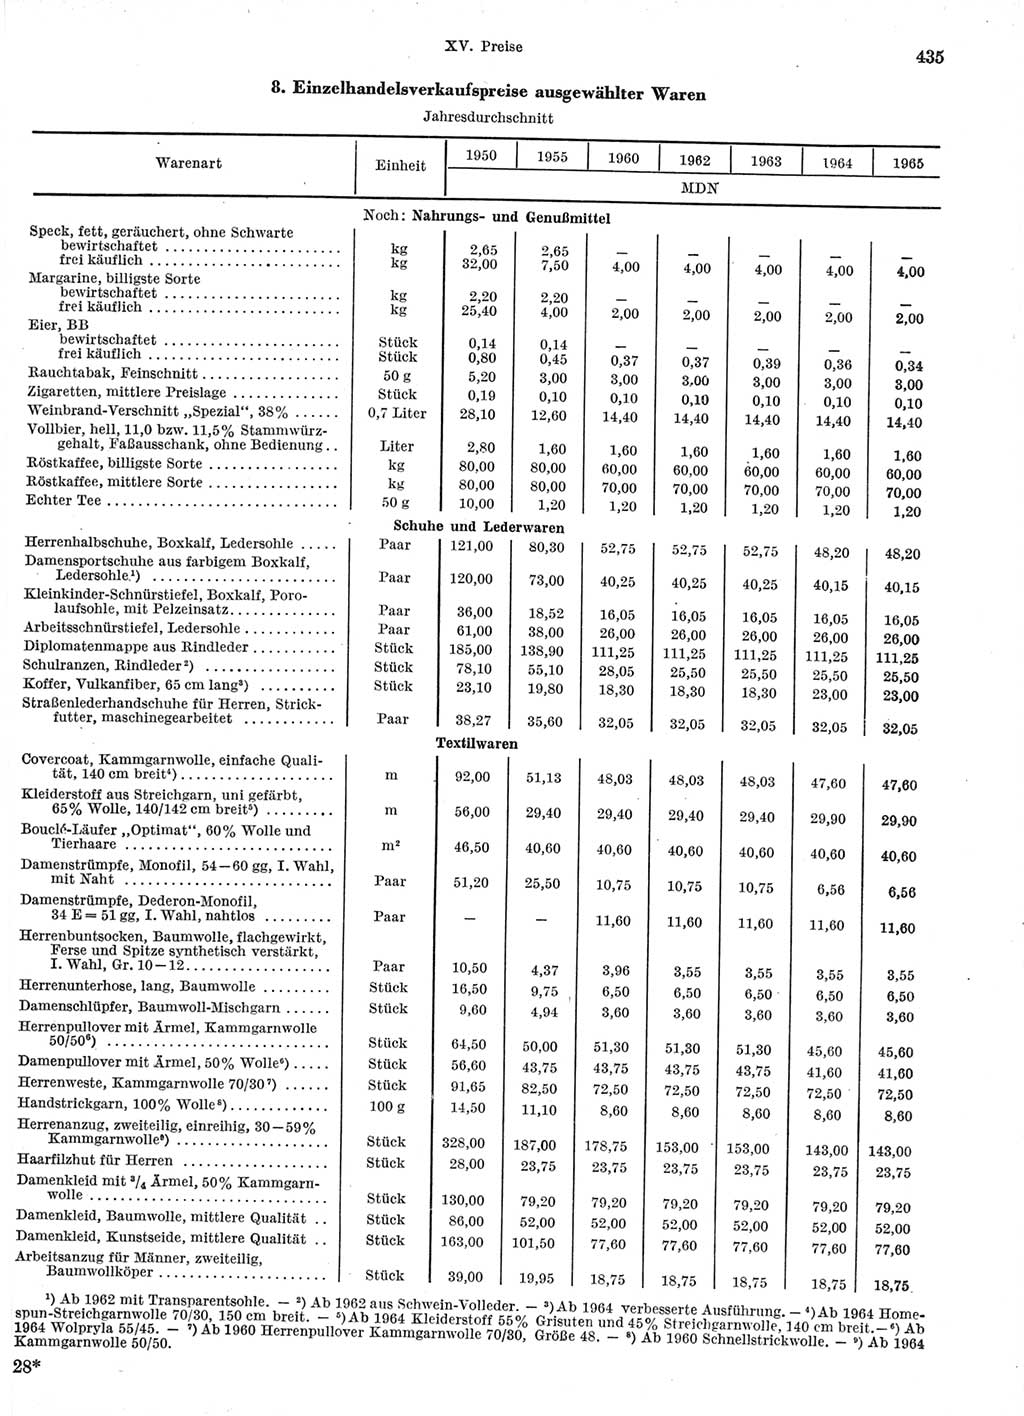 Statistisches Jahrbuch der Deutschen Demokratischen Republik (DDR) 1966, Seite 435 (Stat. Jb. DDR 1966, S. 435)